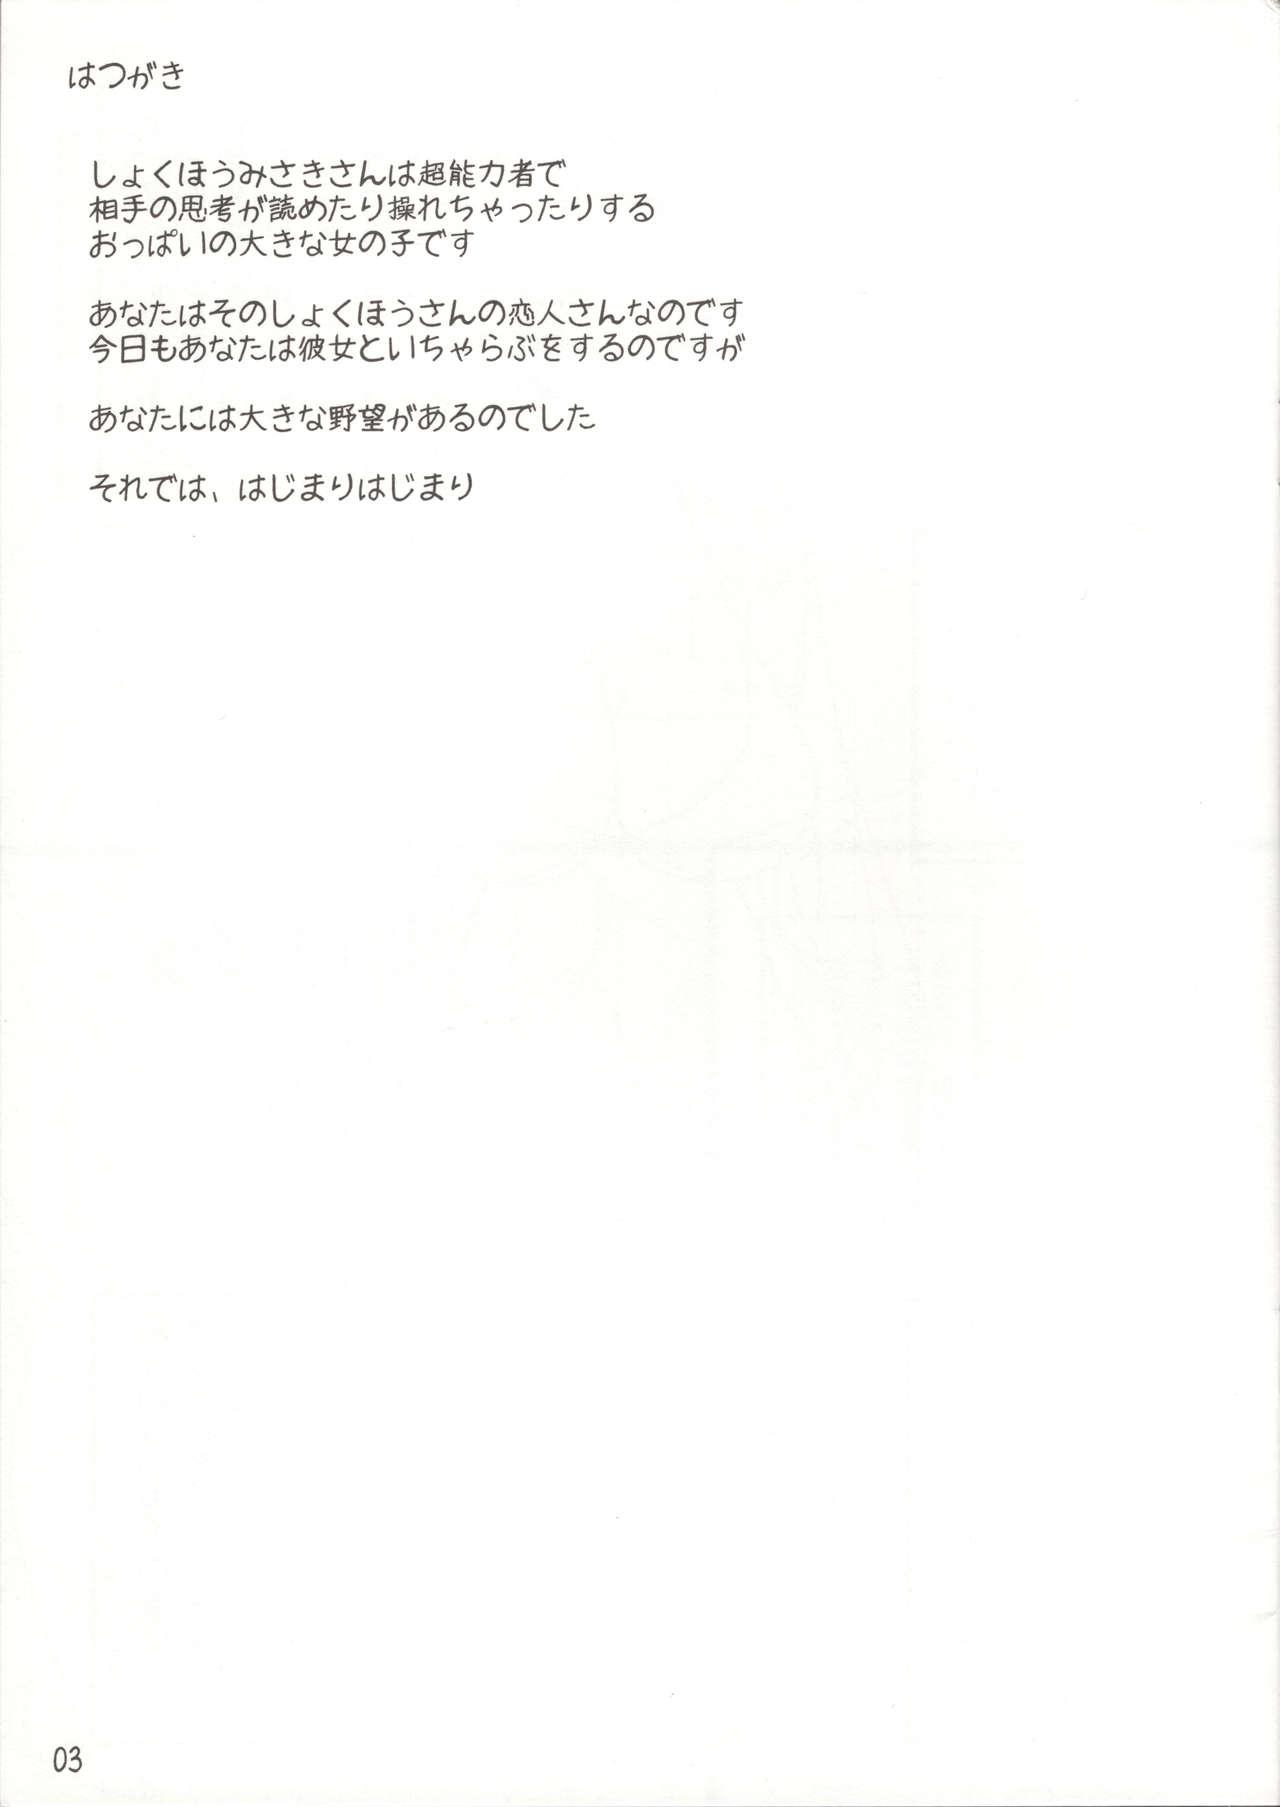 Bound Misaki chito issho! - Toaru kagaku no railgun French - Page 2